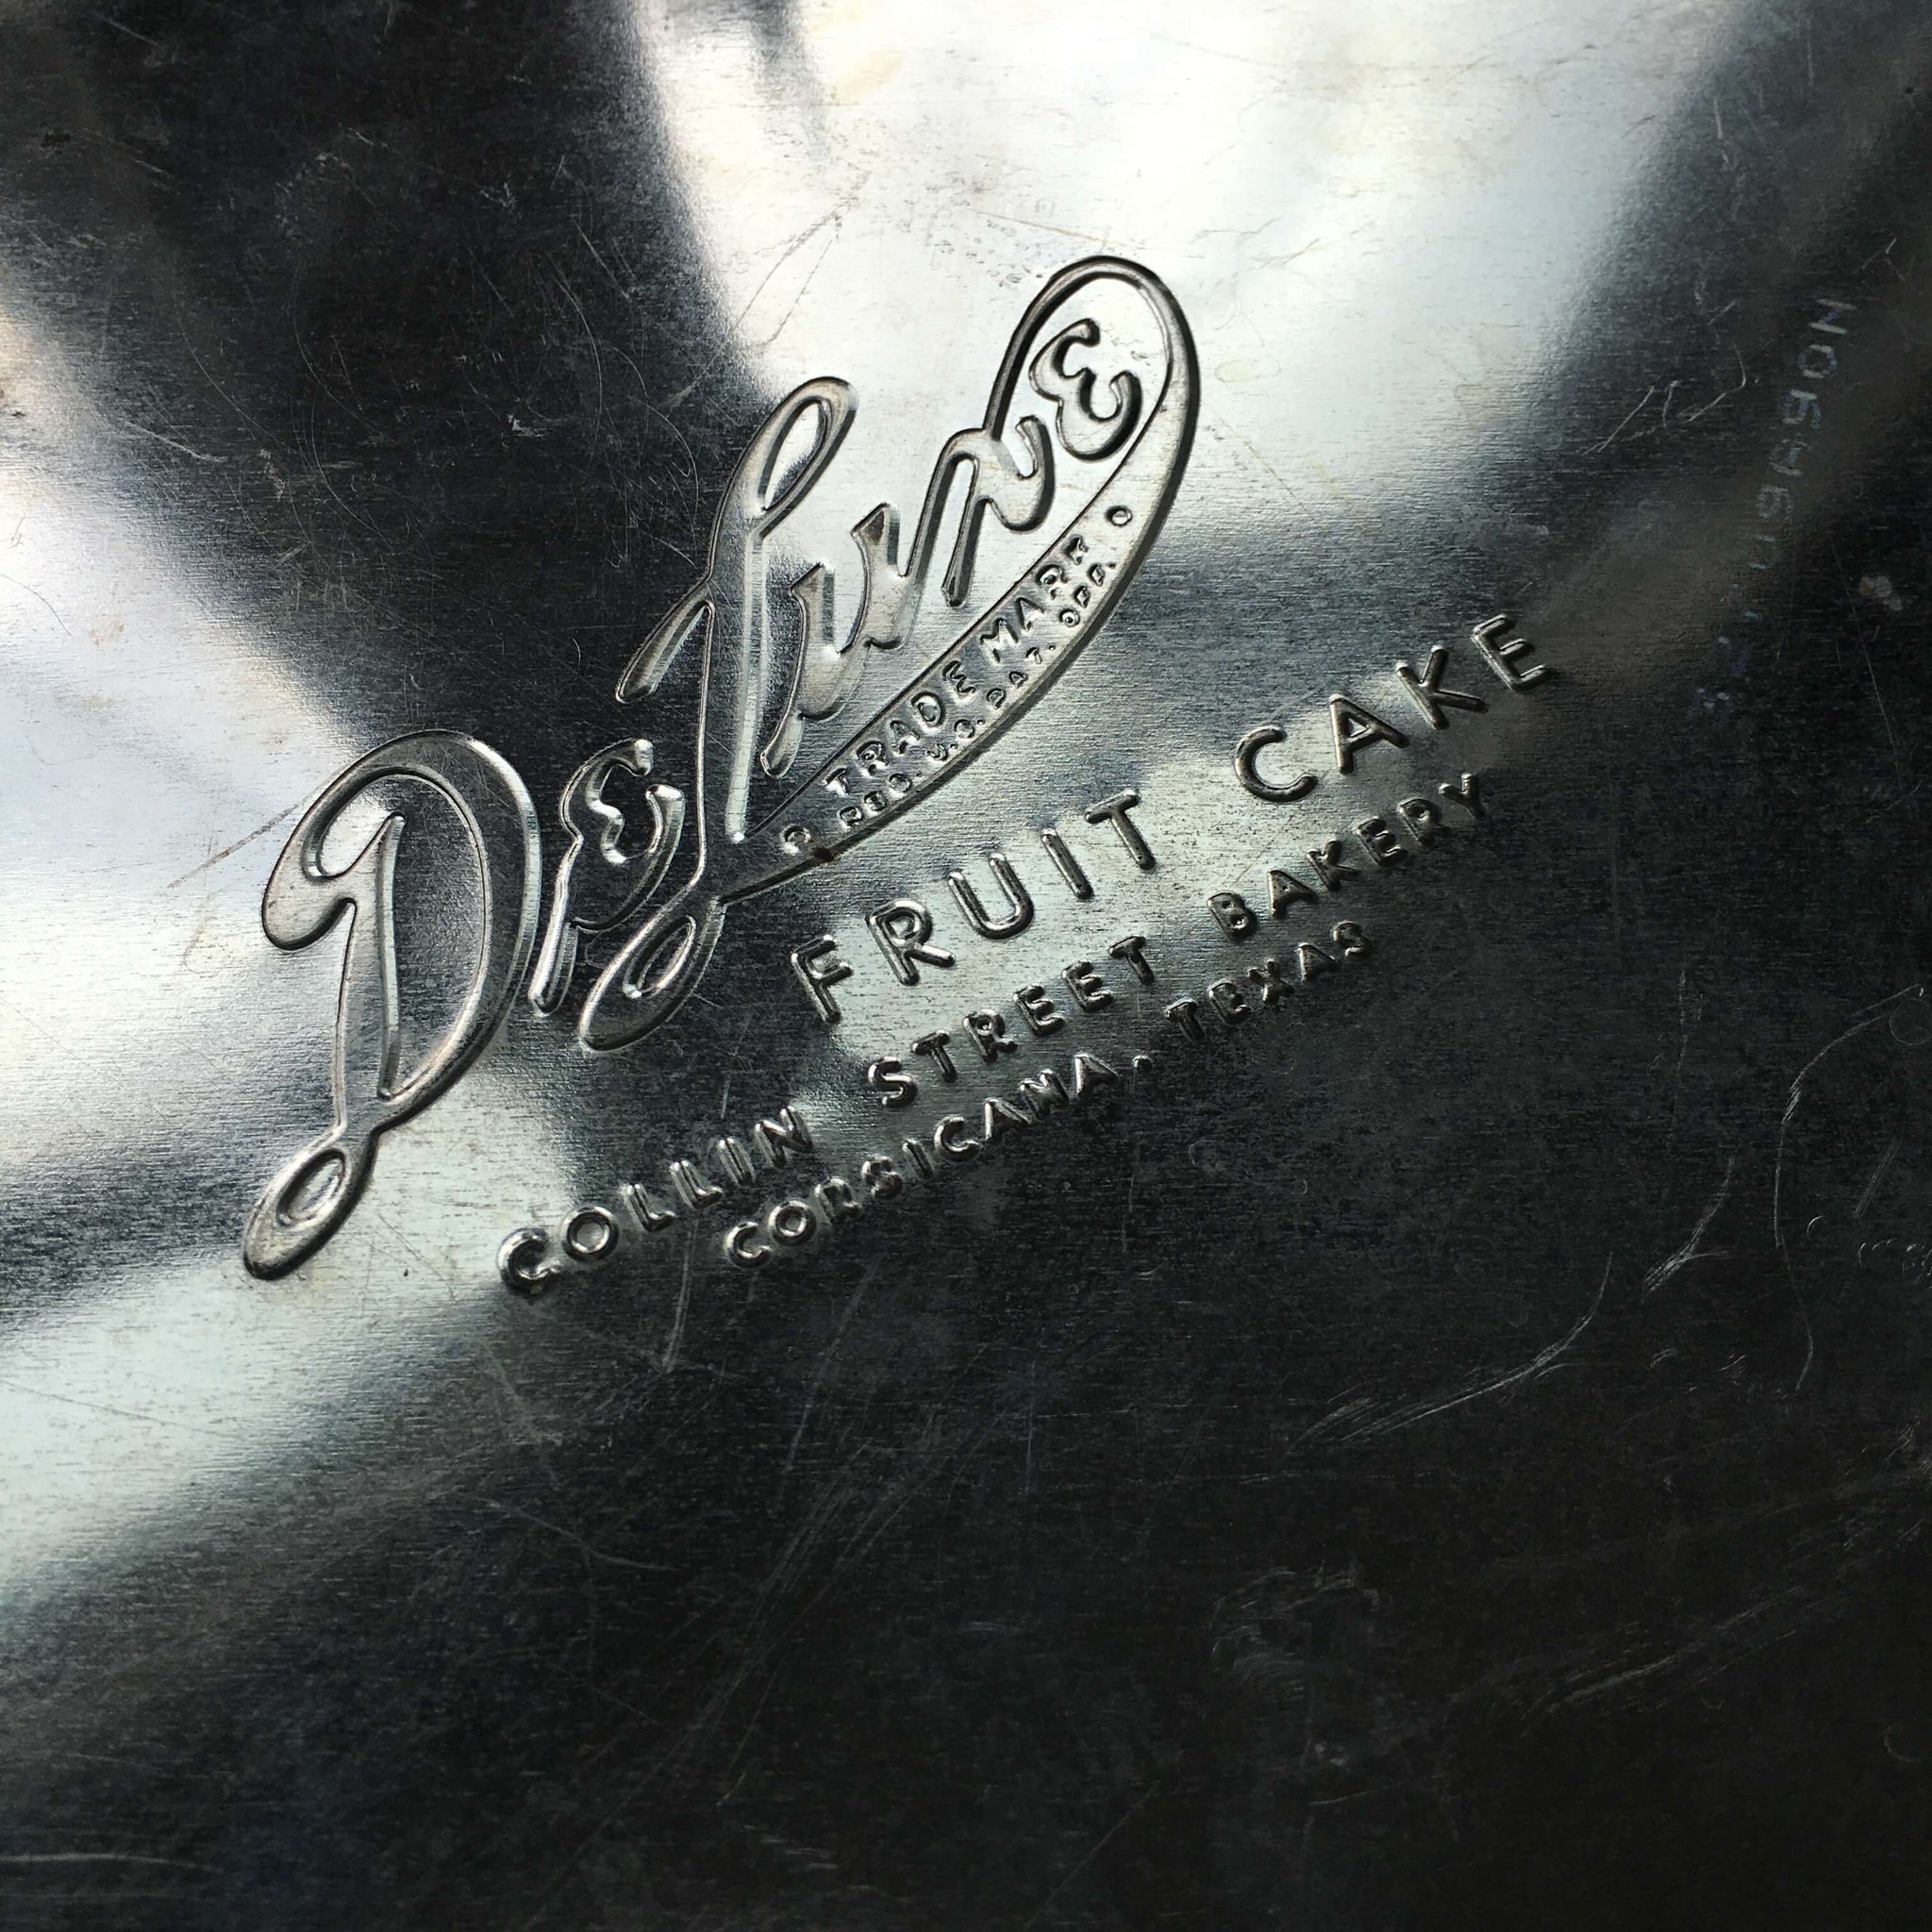 Vintage DeLuxe Fruit Cake Tin - Collin Street Bakery - Corsicana Texas